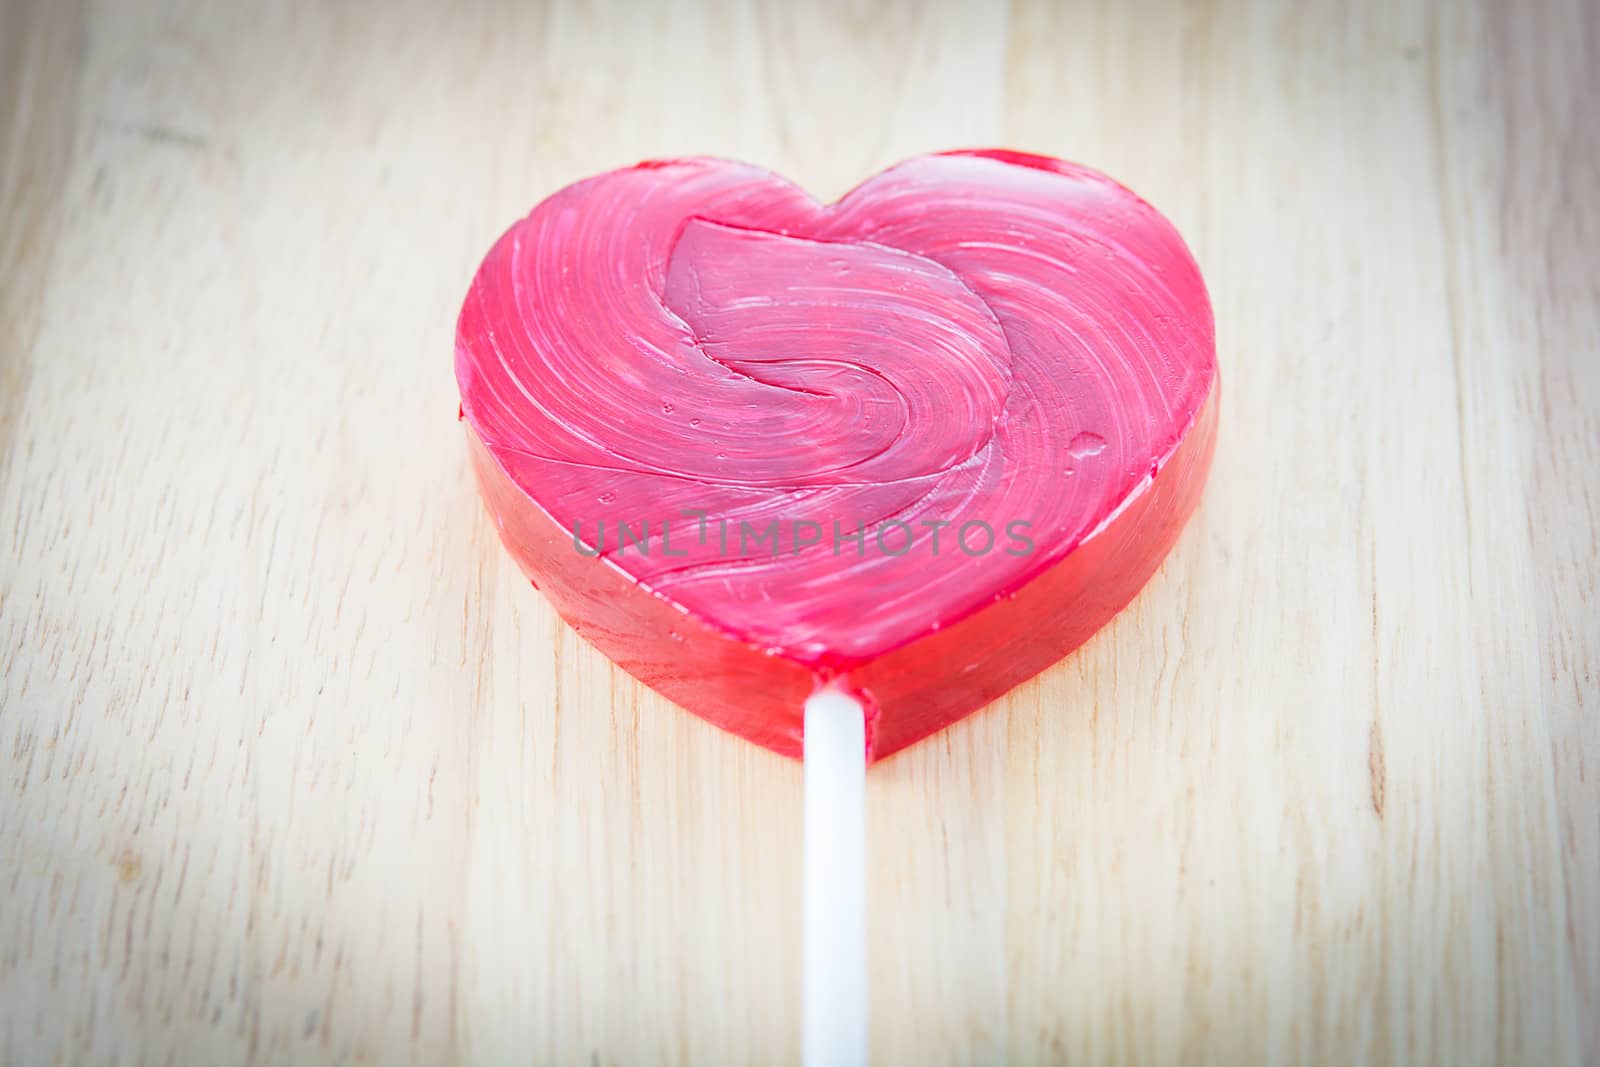 Heart shaped colorful lollipop by Sorapop